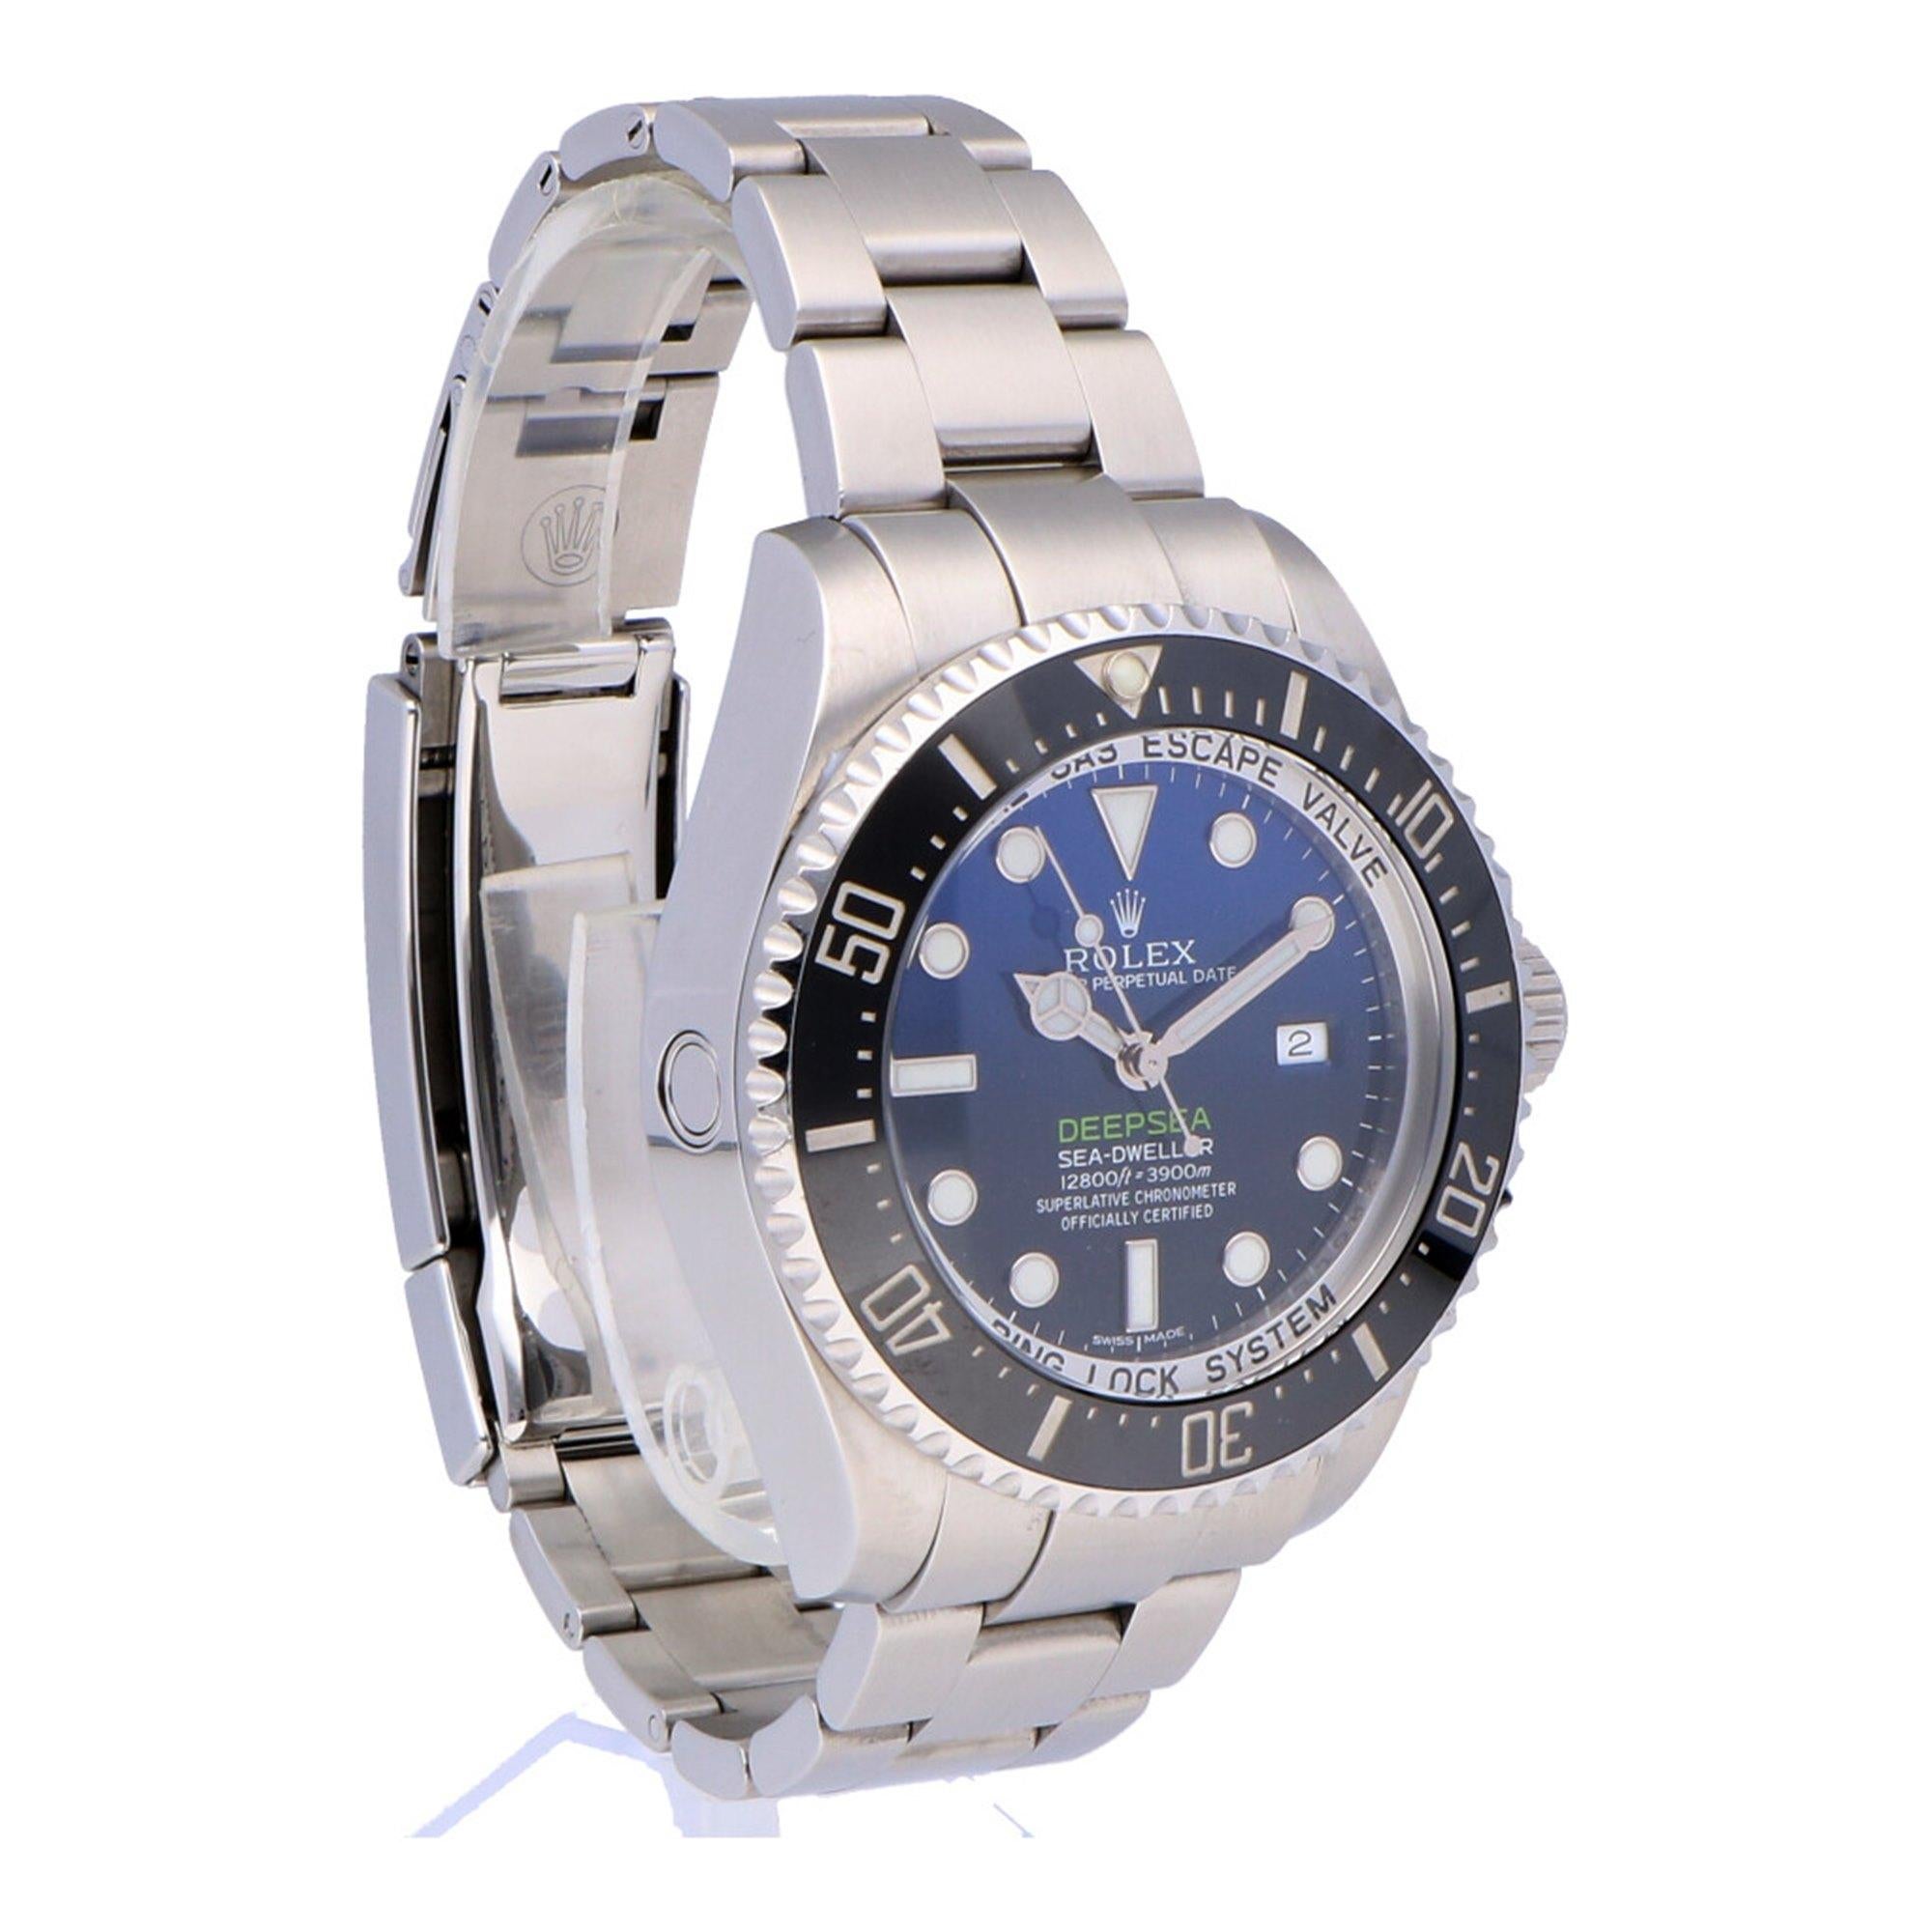 Pre-Owned Rolex Sea-Dweller Deepsea Stainless Steel 116660 Watch 2